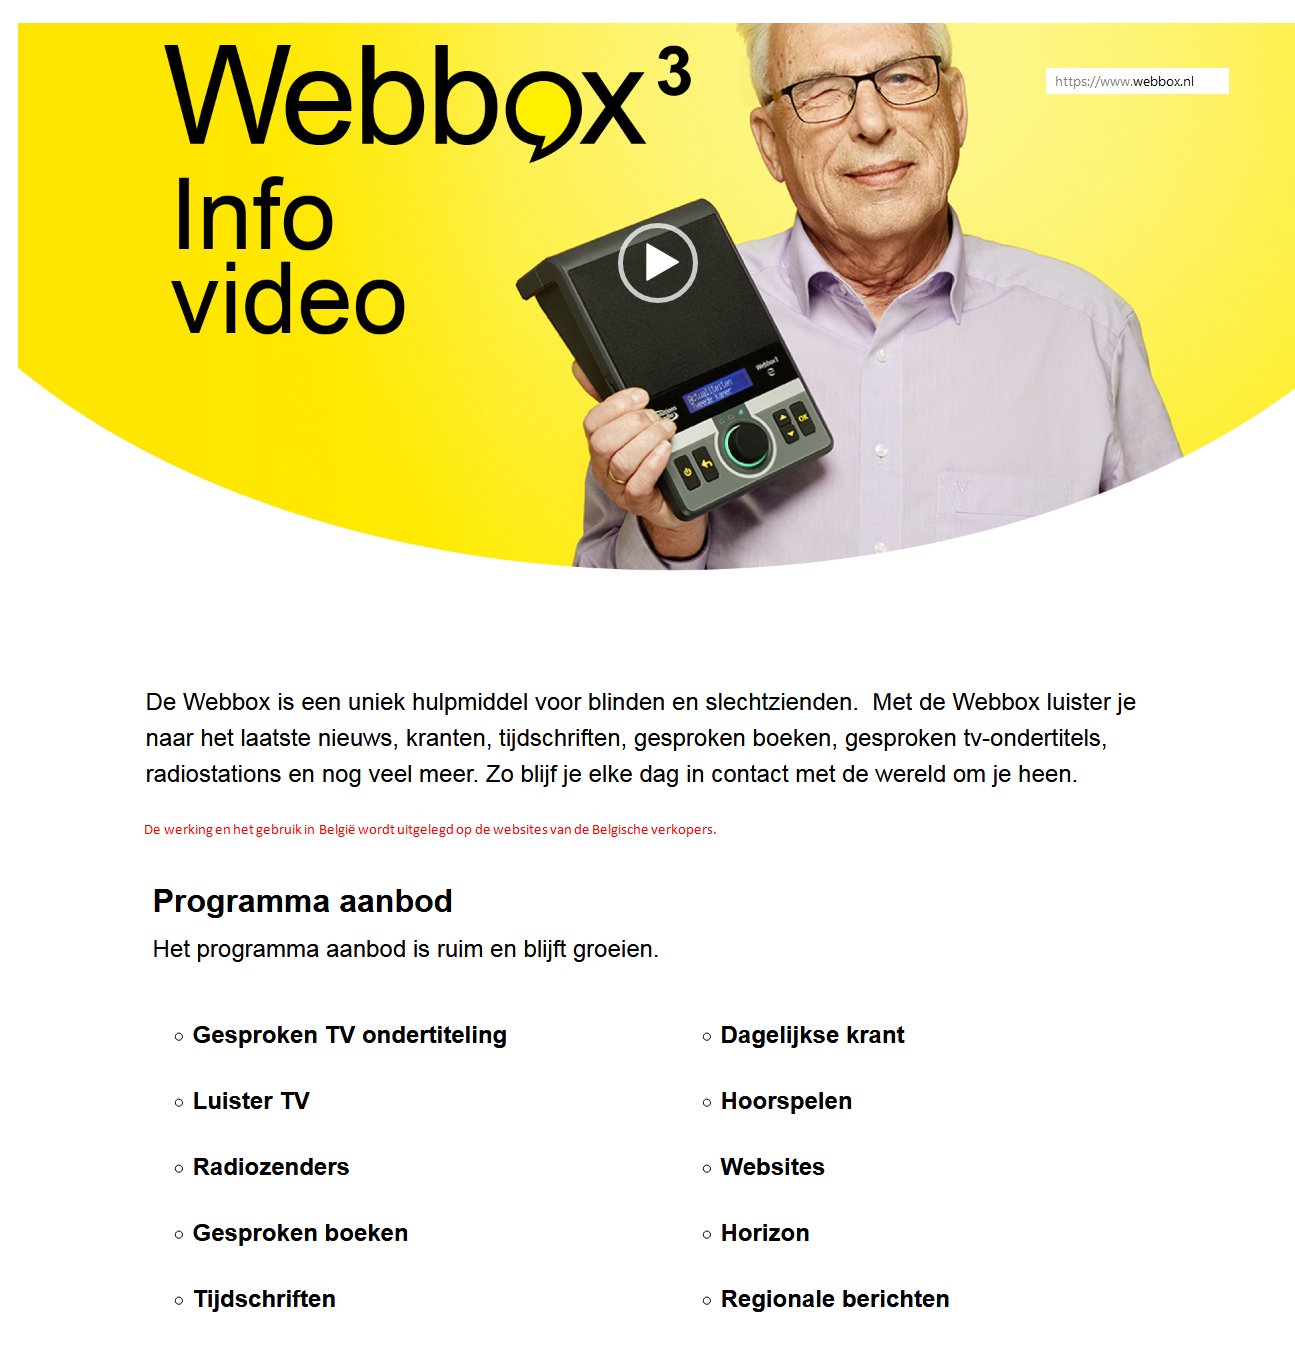 toegevoegd document 3 van Webbox3 online daisyspeler met gesproken tv-ondertiteling 